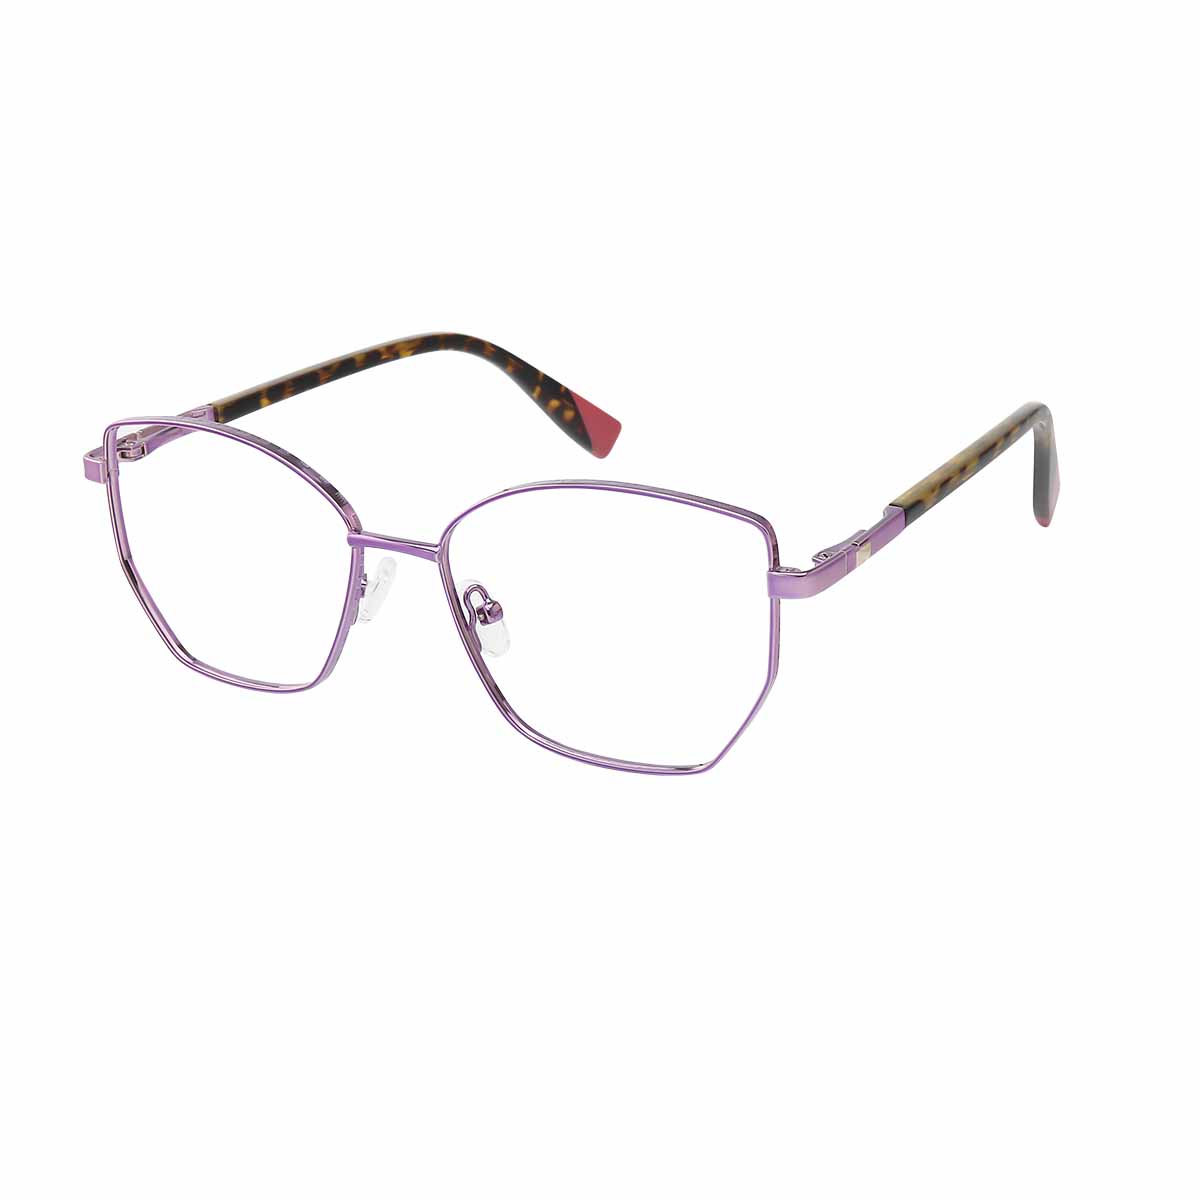 Eleanora - Square Purple/Demi Reading Glasses for Women